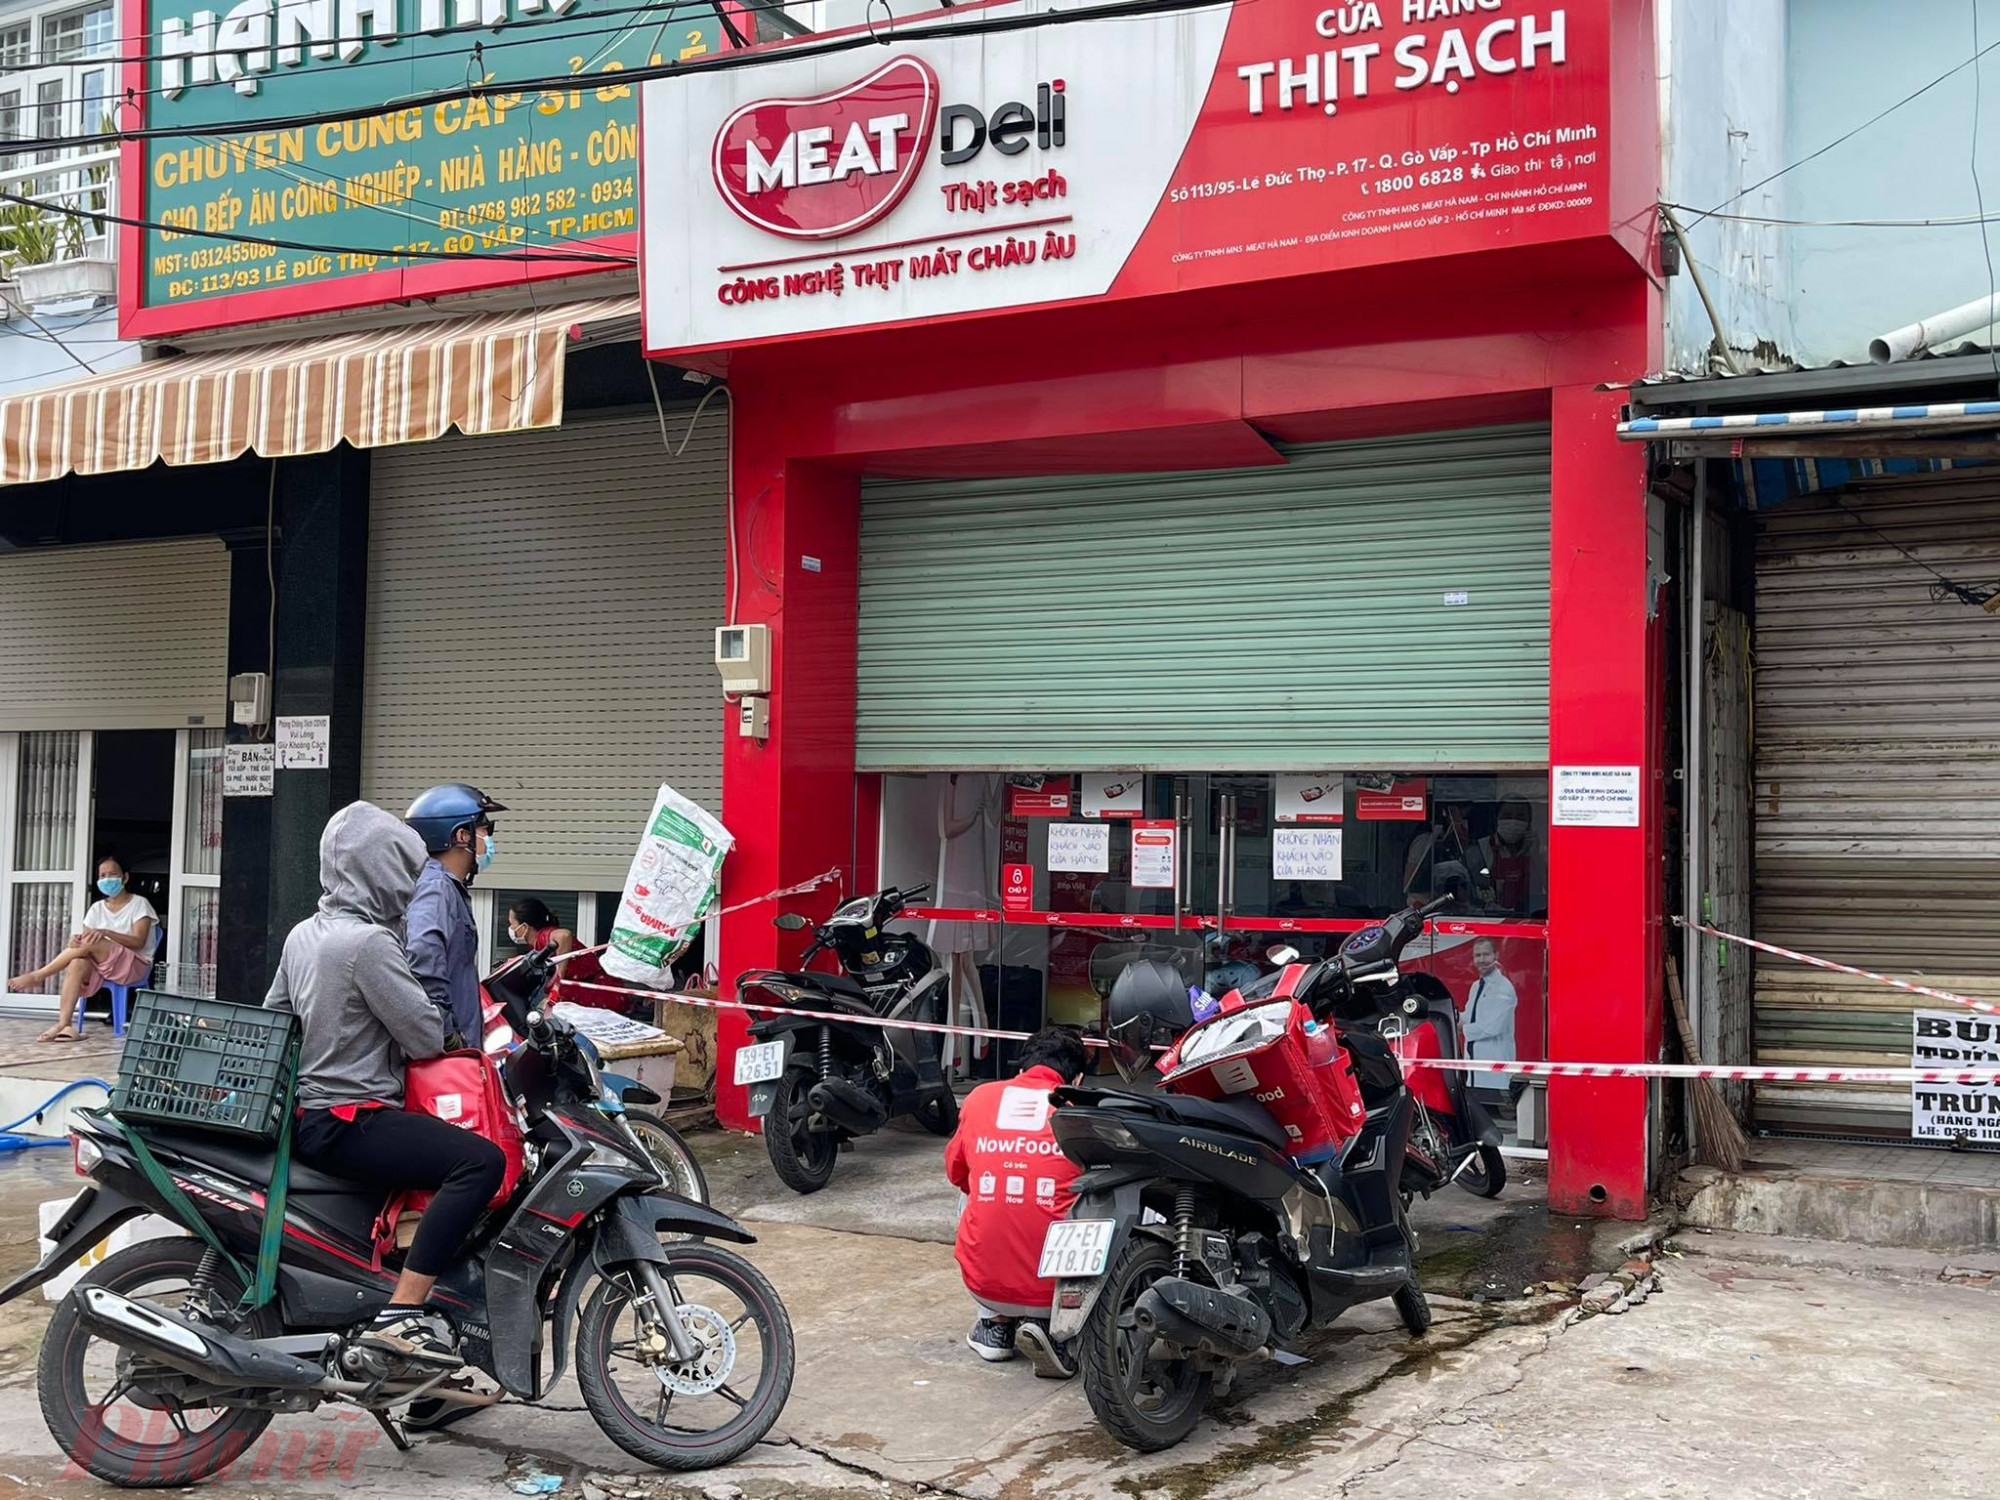 Tại các quận huyện khác, lượng khách mua hàng cũng đang quá tải. Như tại cửa hàng thịt sạch Meat Deli (Đường Lê Đức Thọ, Q.Gò Vấp) phải kéo bớt cửa xuống để hạn chế lượng 